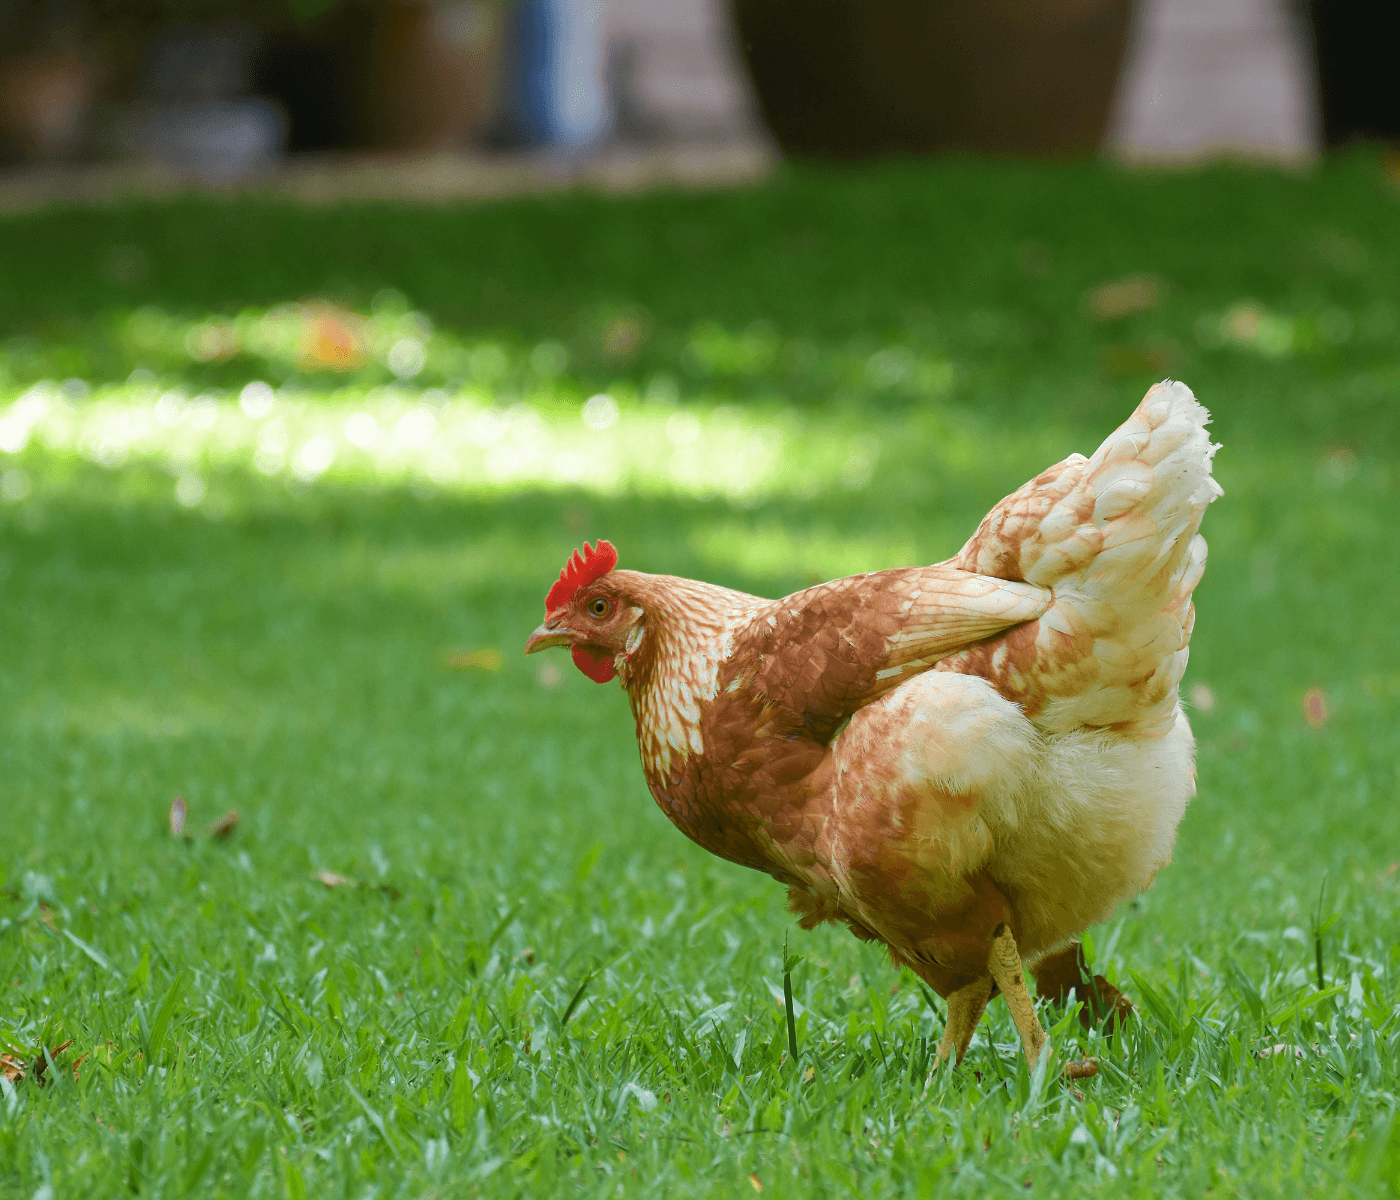 Bem-estar animal e sustentabilidade na avicultura: entenda como aplicar os conceitos de forma eficaz no sistema produtivo